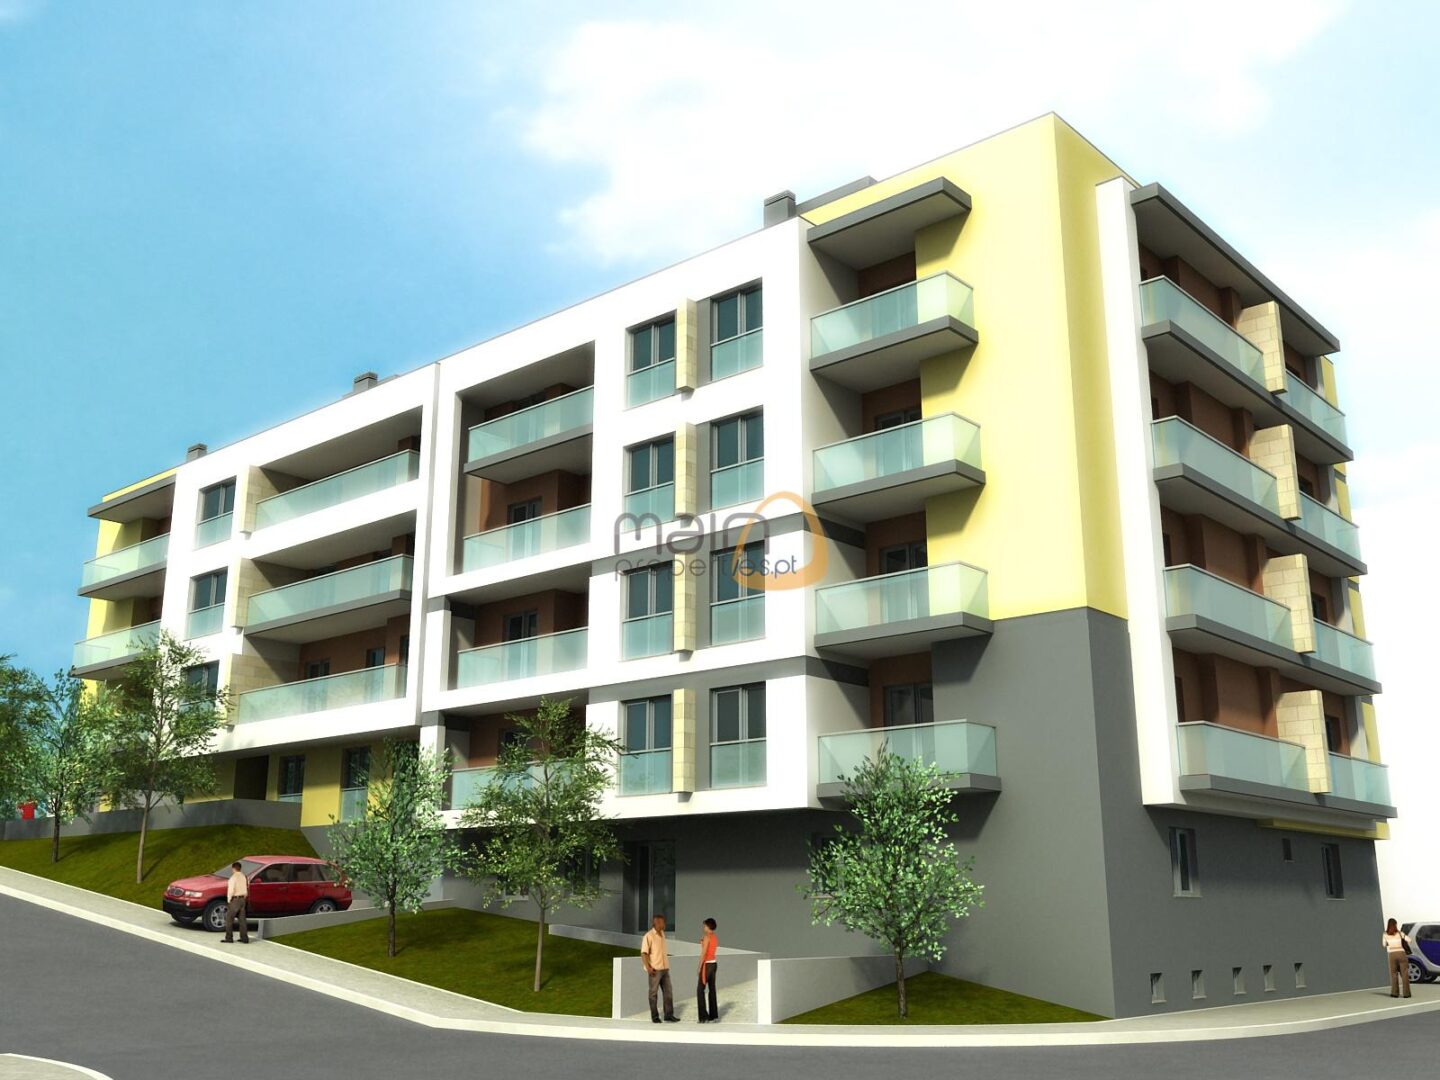 Investimento - Lote para prédio com 8 apartamentos em Almancil RF135_PP1